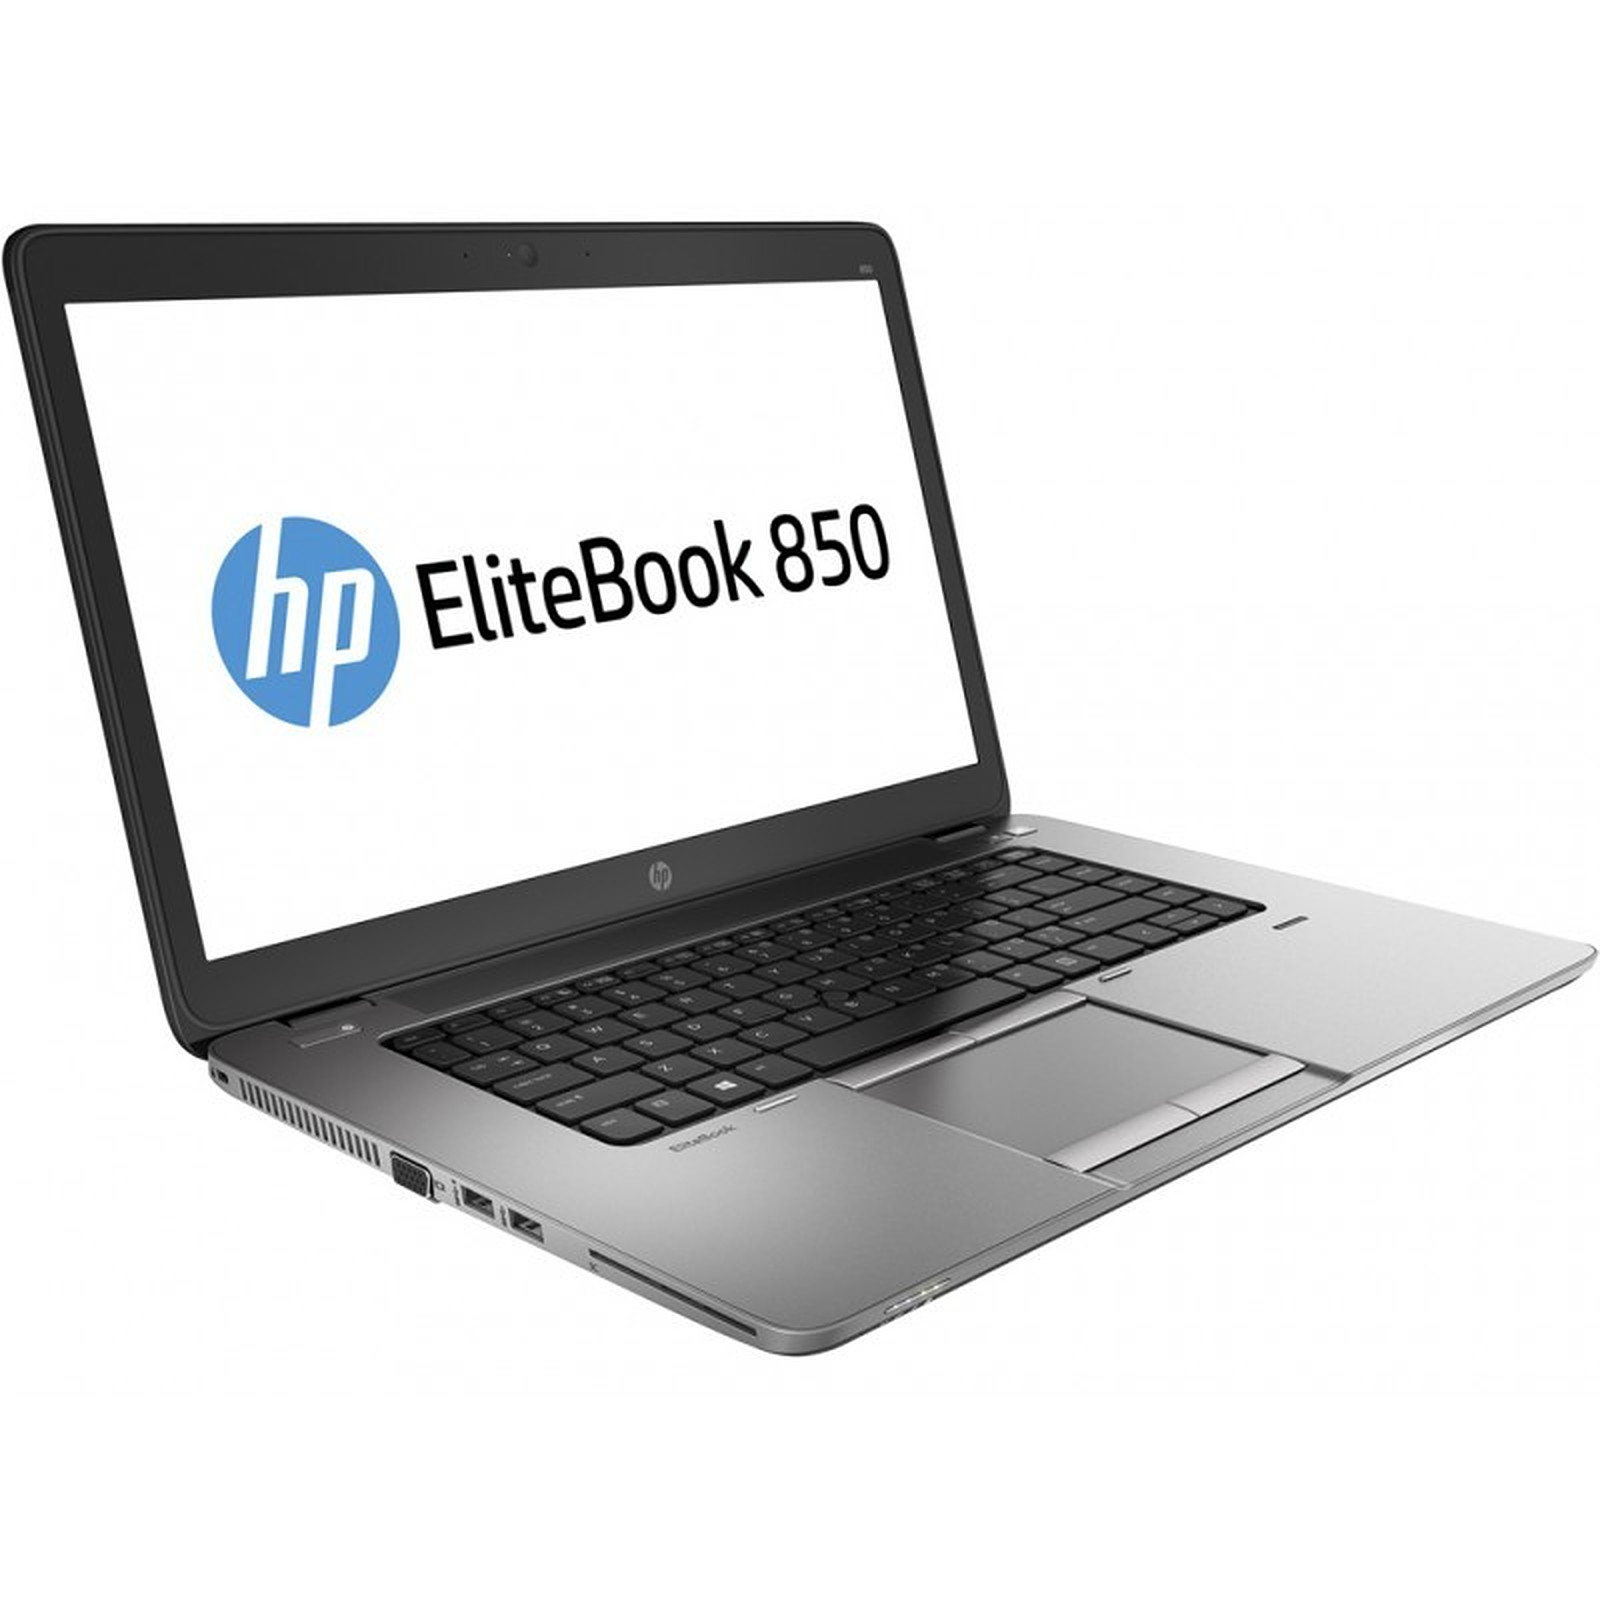 HP EliteBook 850 G2 (G8T24AV-B-1453) (G8T24AV-B) · Reconditionne - PC portable reconditionne HP